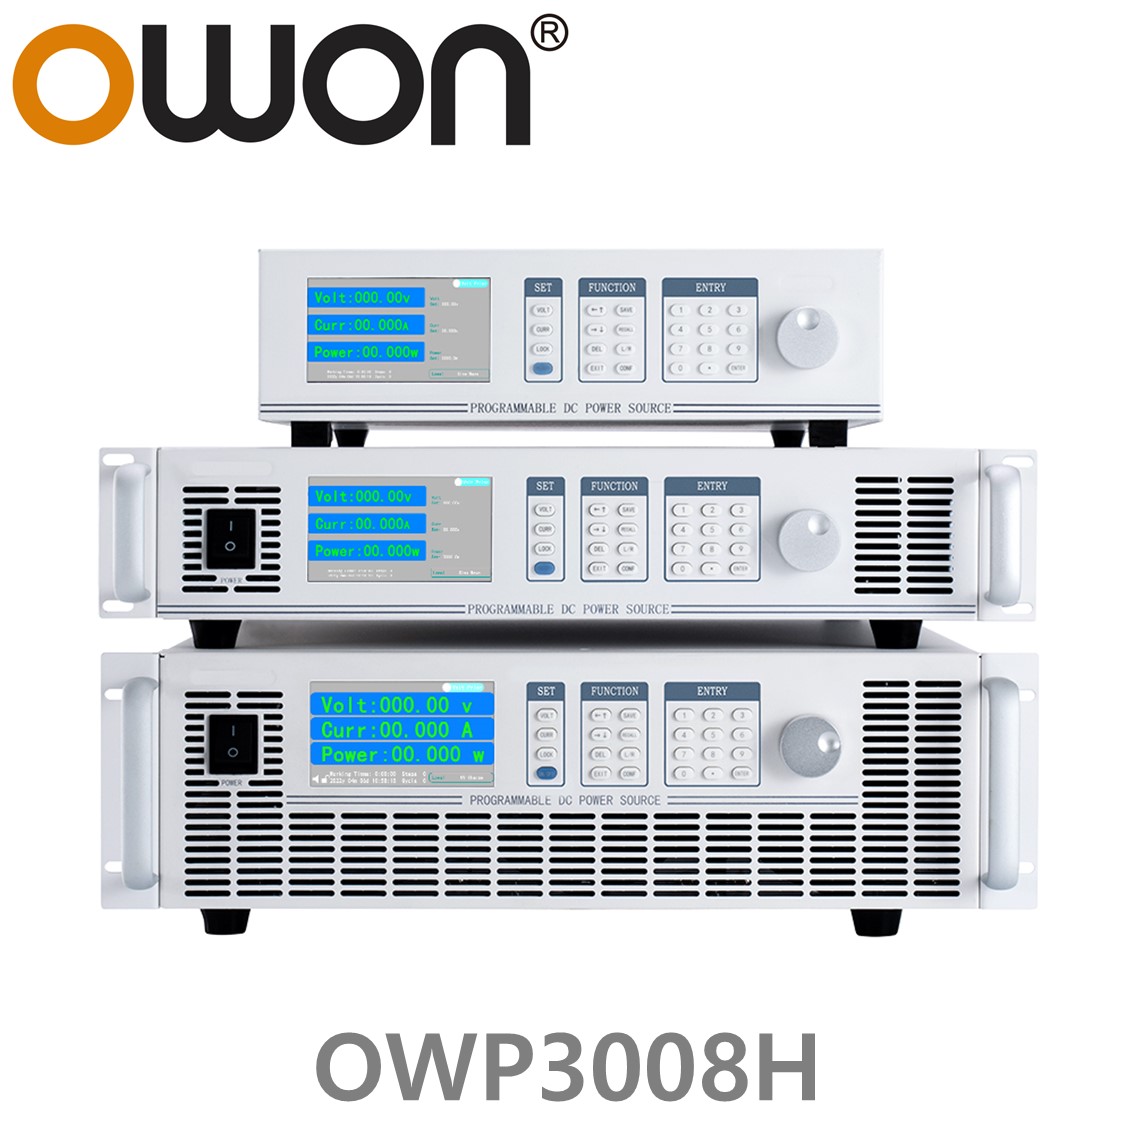 [ OWON ] OWP3008H 고전력 DC파워서플라이, 0-80.000V / 0-60.000A / 3000.0W DC전원공급장치